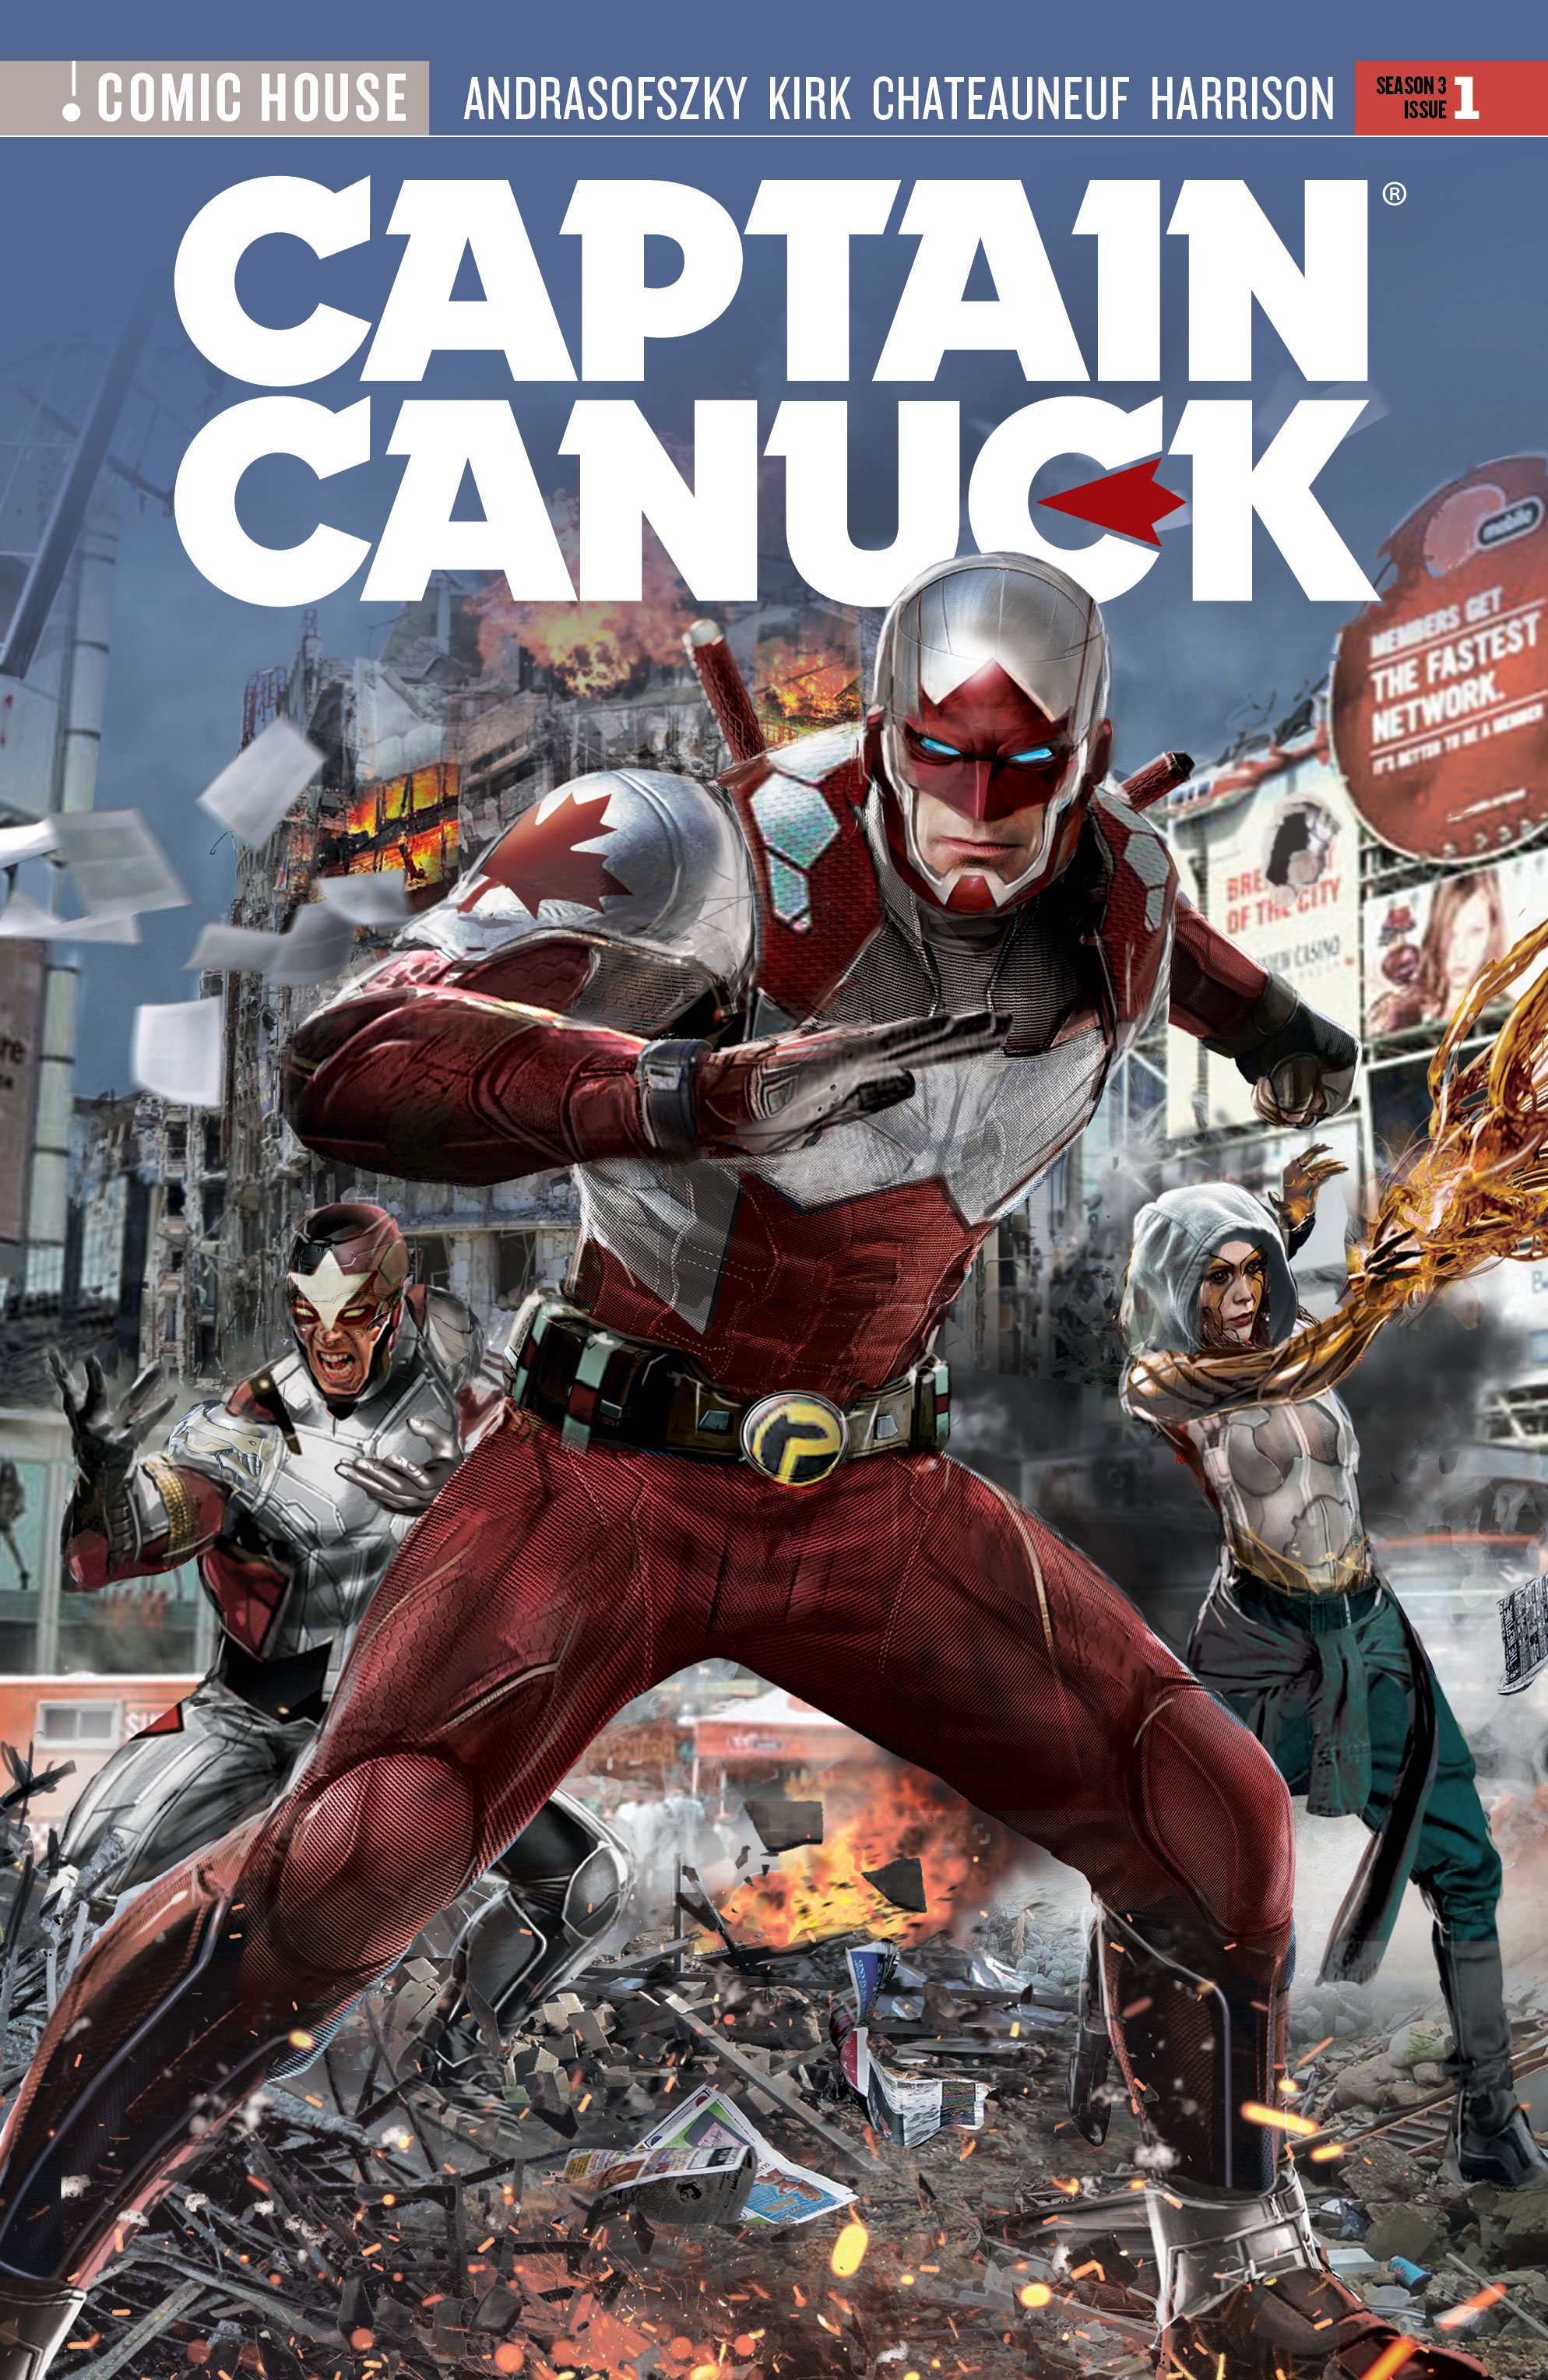 CaptainCanuck_012_S3_Issue1_cover.jpg